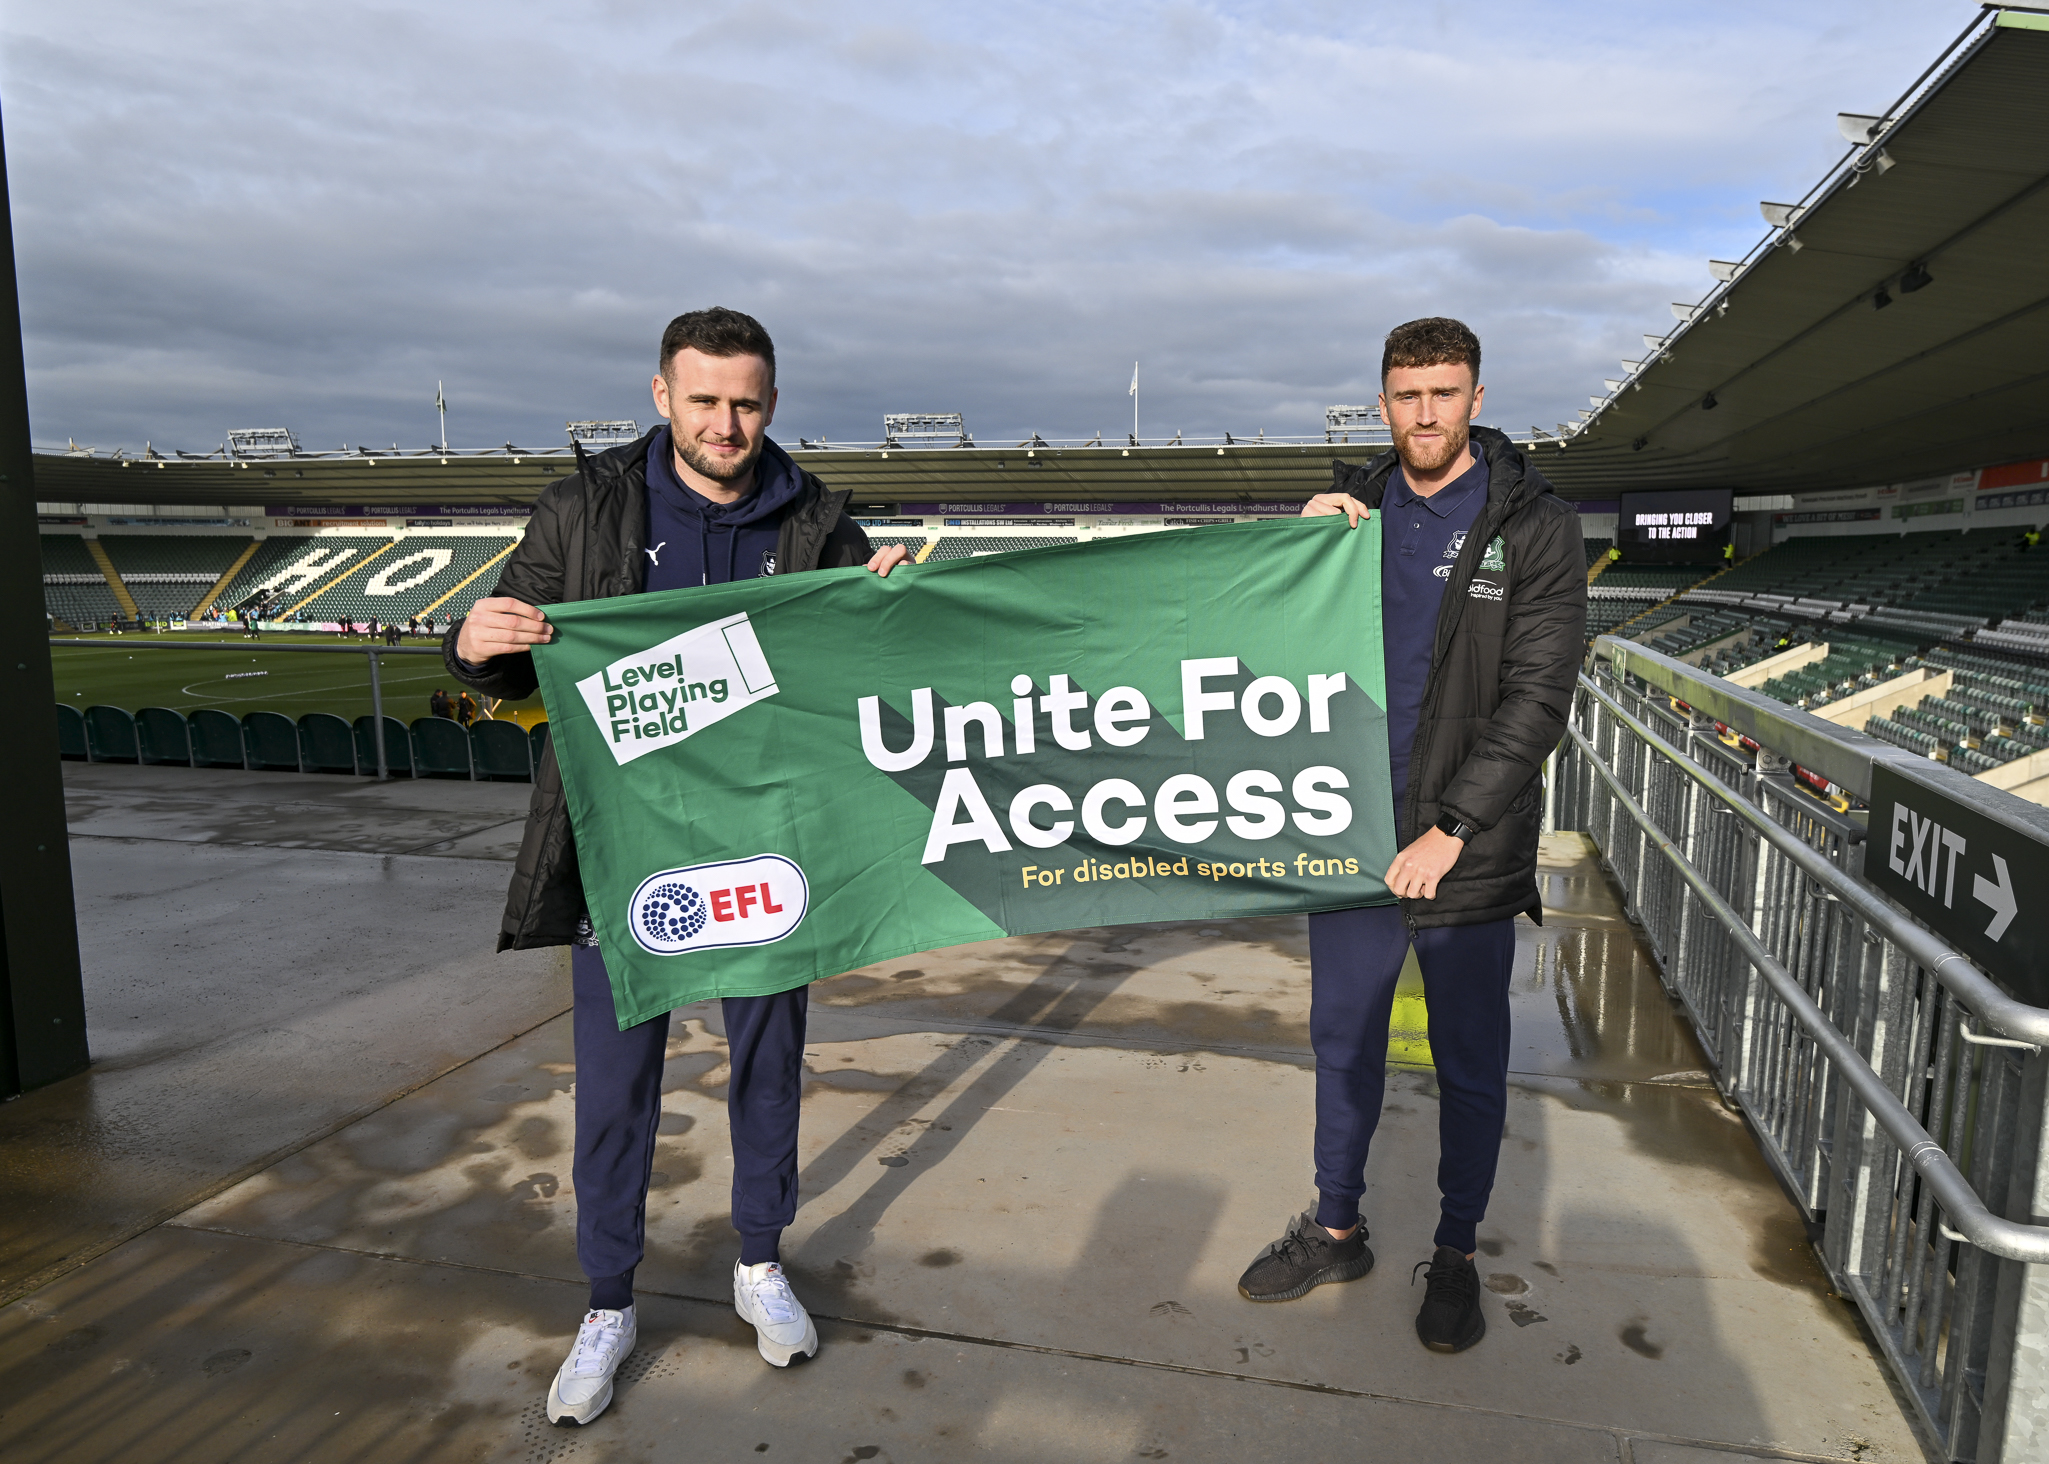 Unite for Access